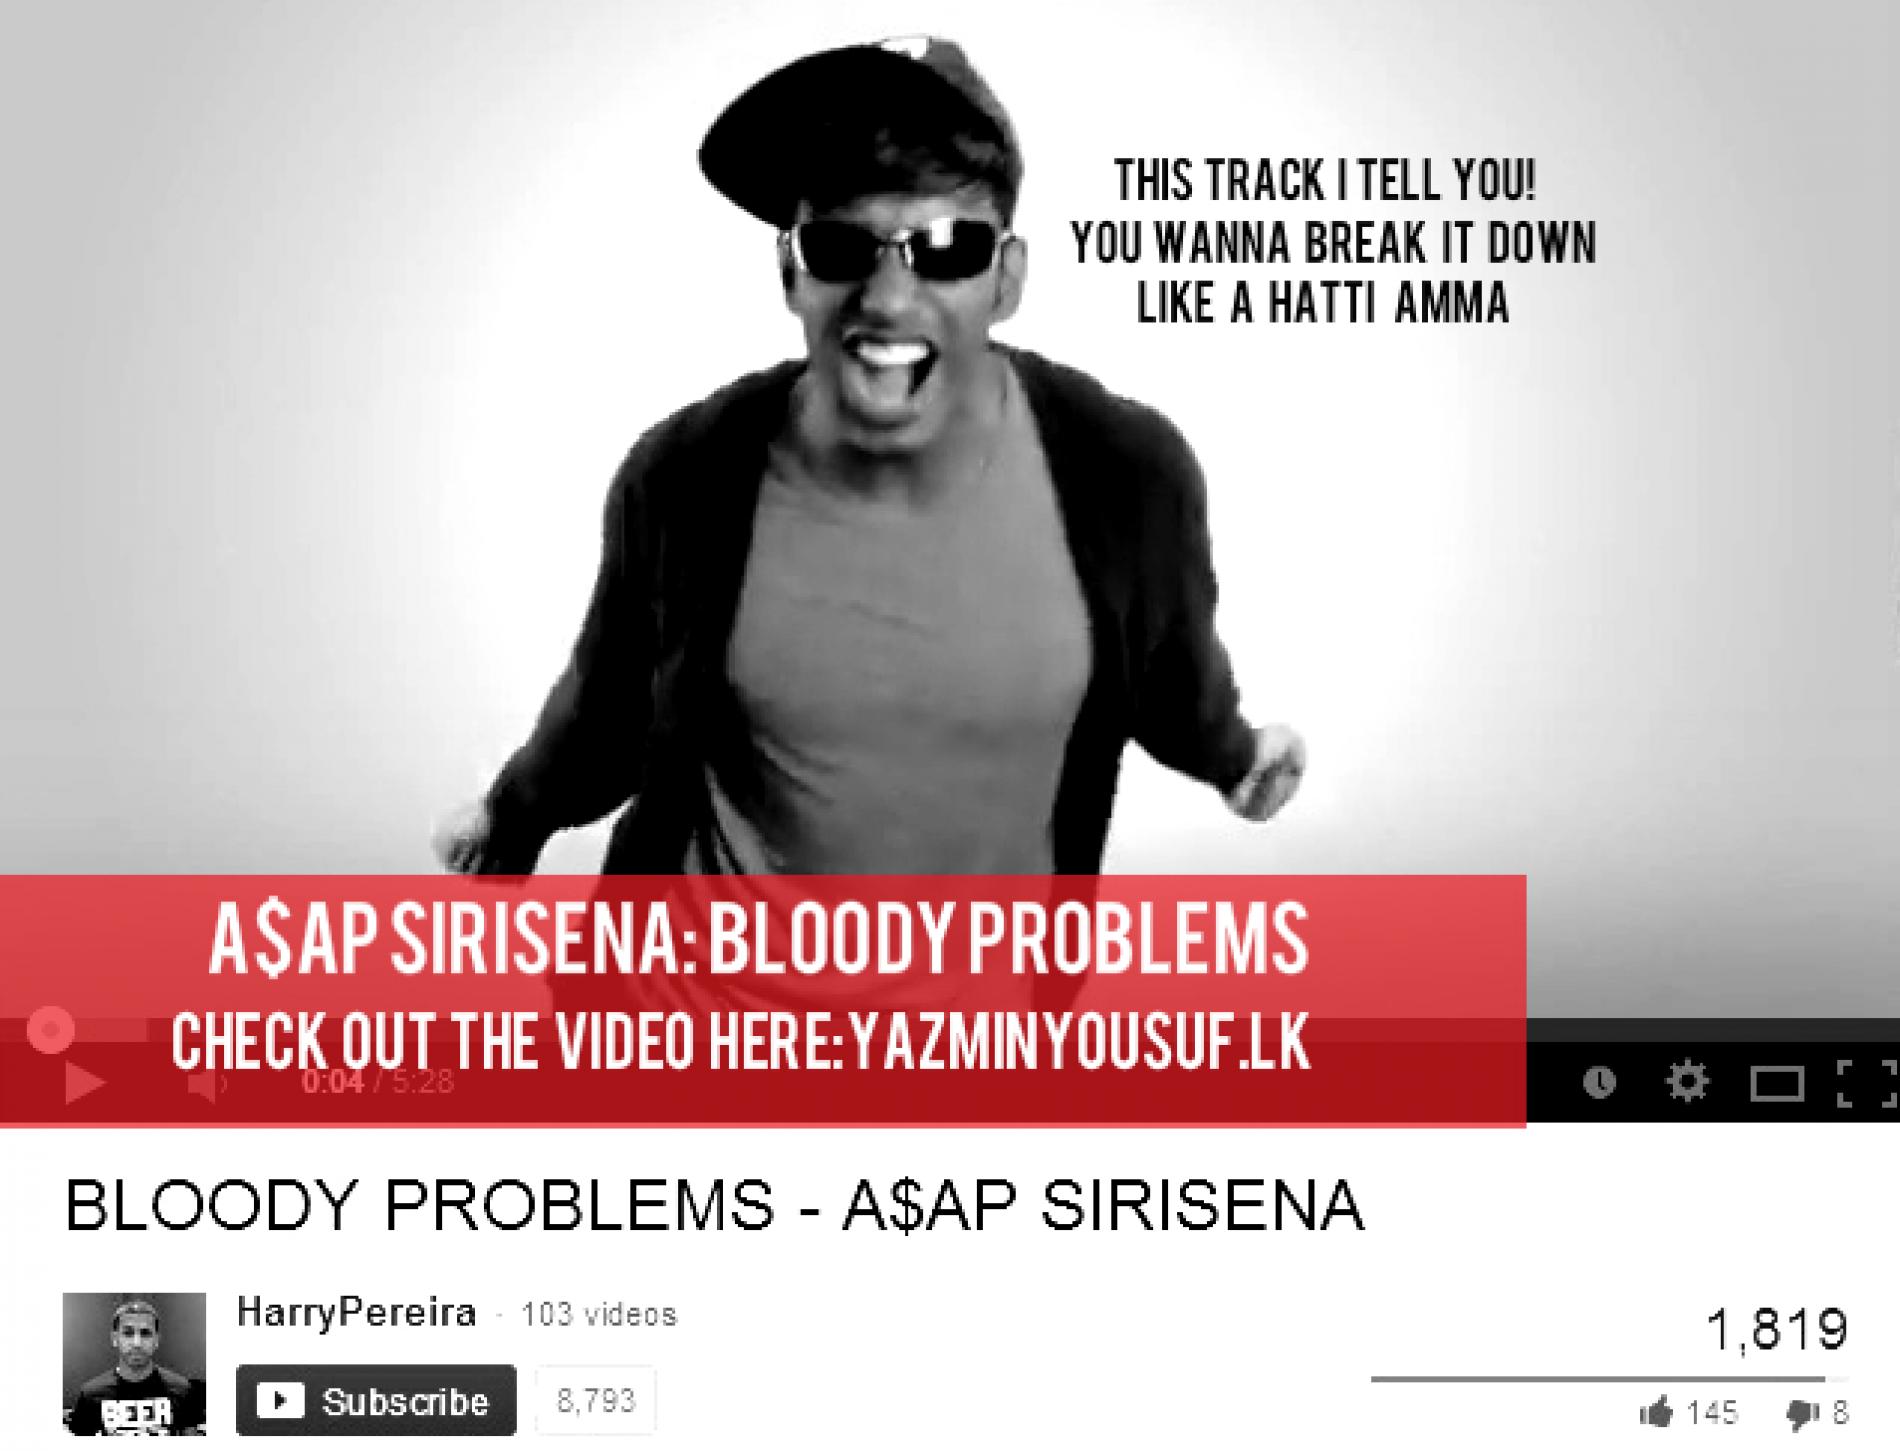 A$ap Sirisena: Bloody Problems